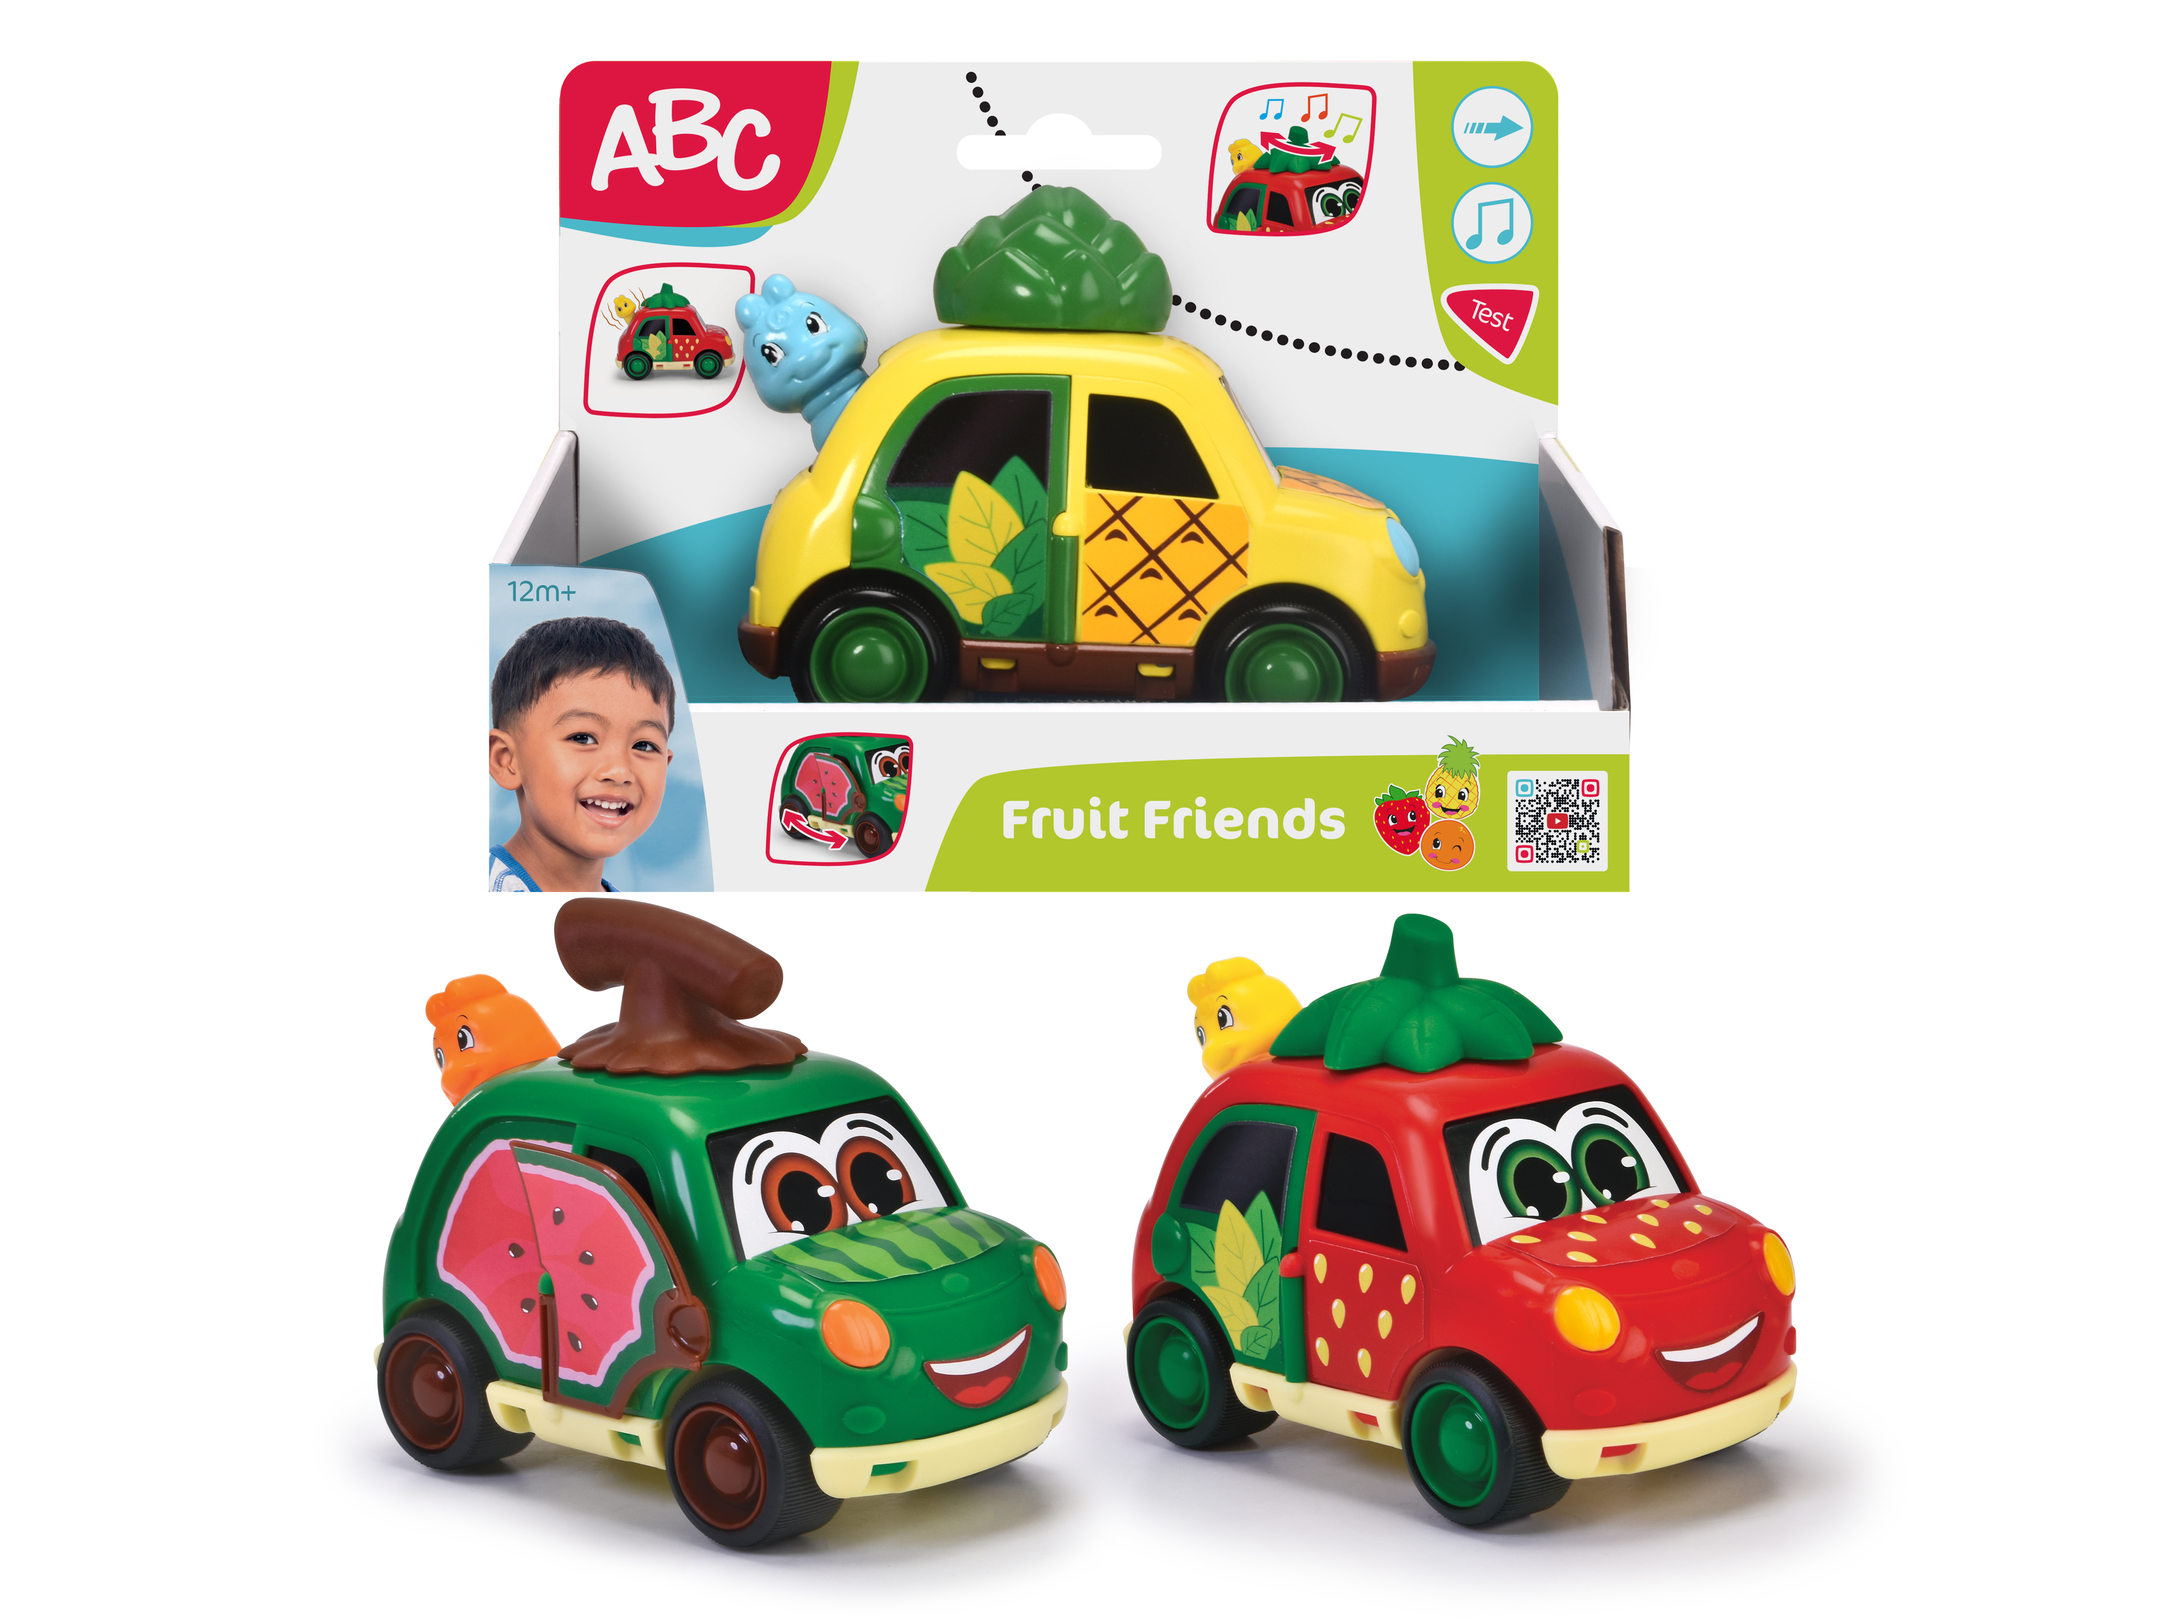 ABC Fruit Friends 3fs.